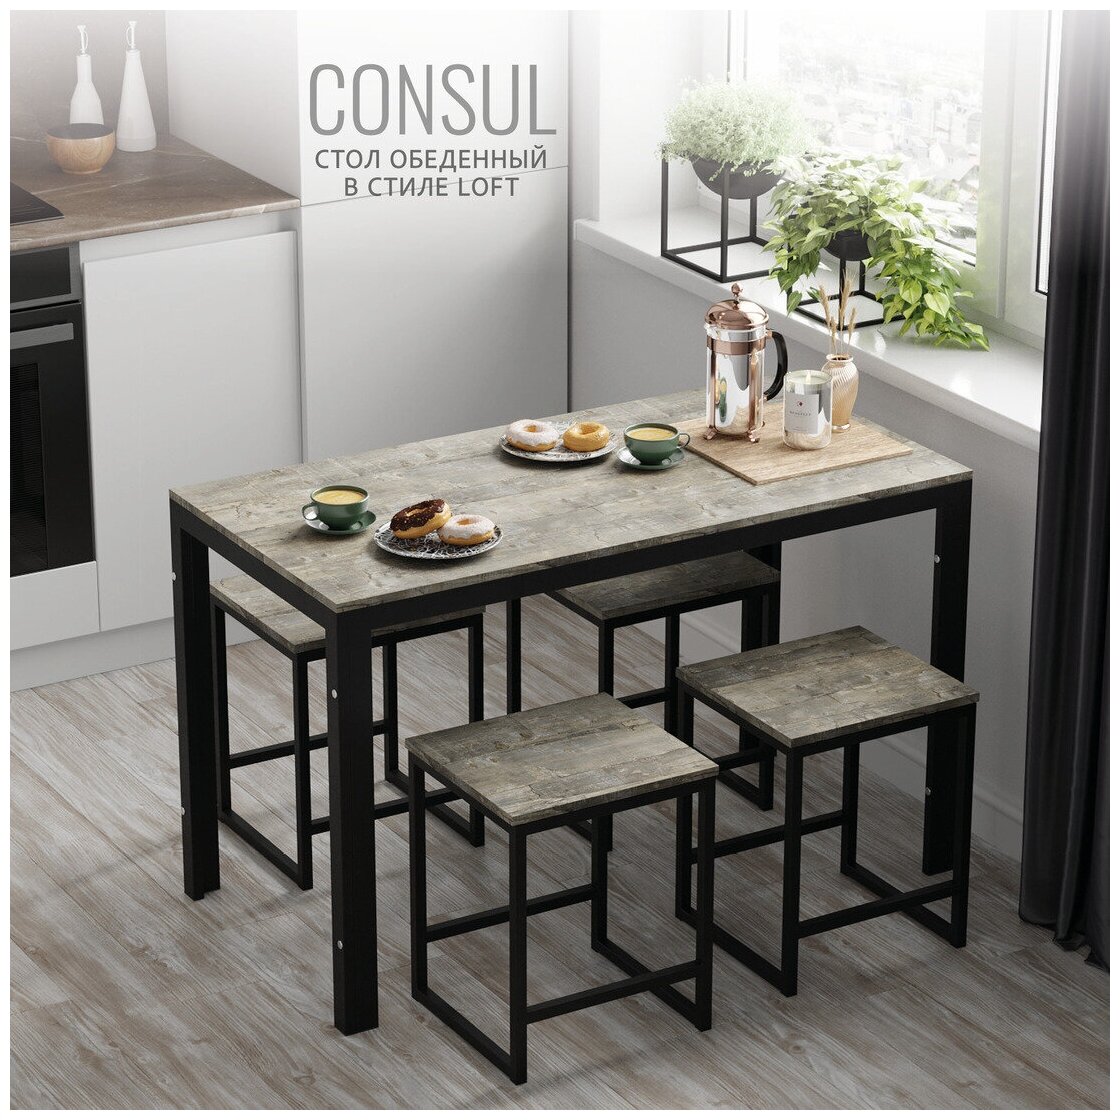 Стол обеденный нераскладной, кухонный стол, серый, металлический, мебель лофт, 120х60х75 см, CONSUL loft, Гростат